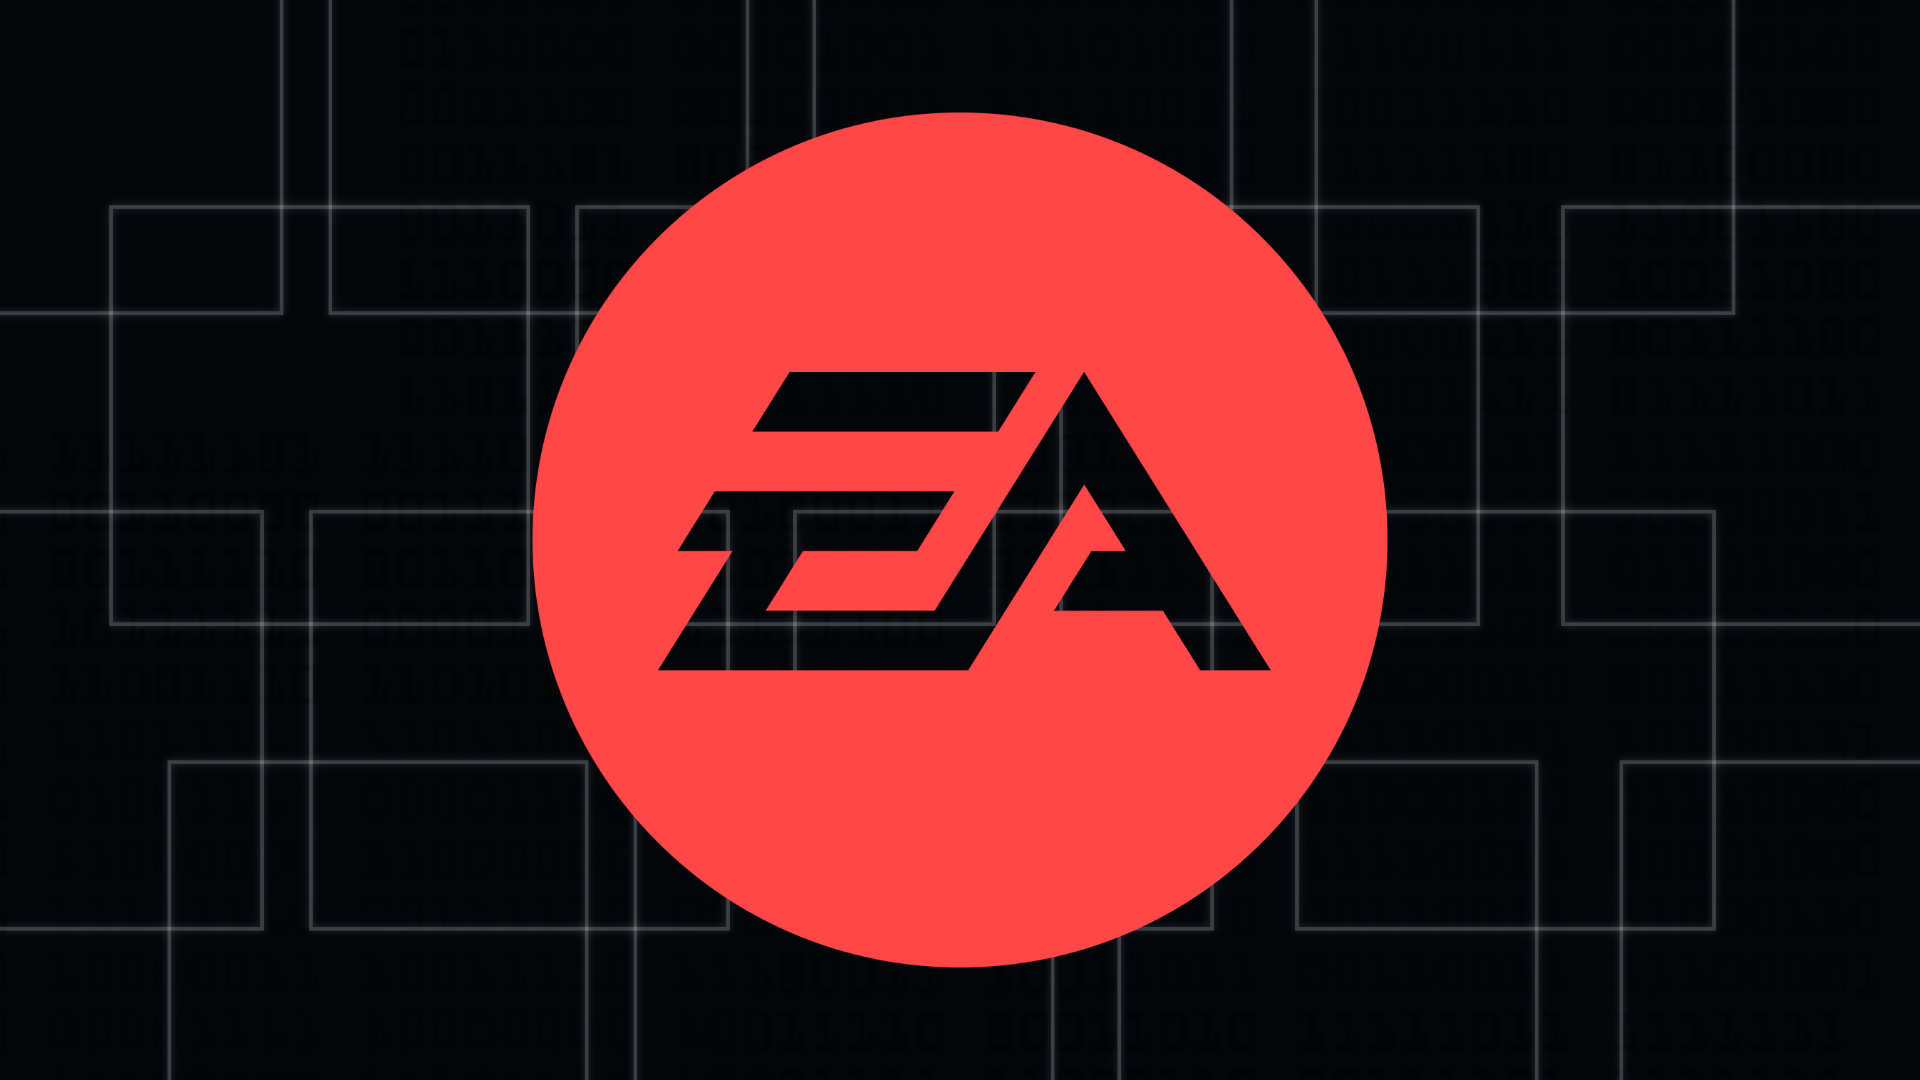 《战地2042》新赛季获得成功 EA将加倍投入支持